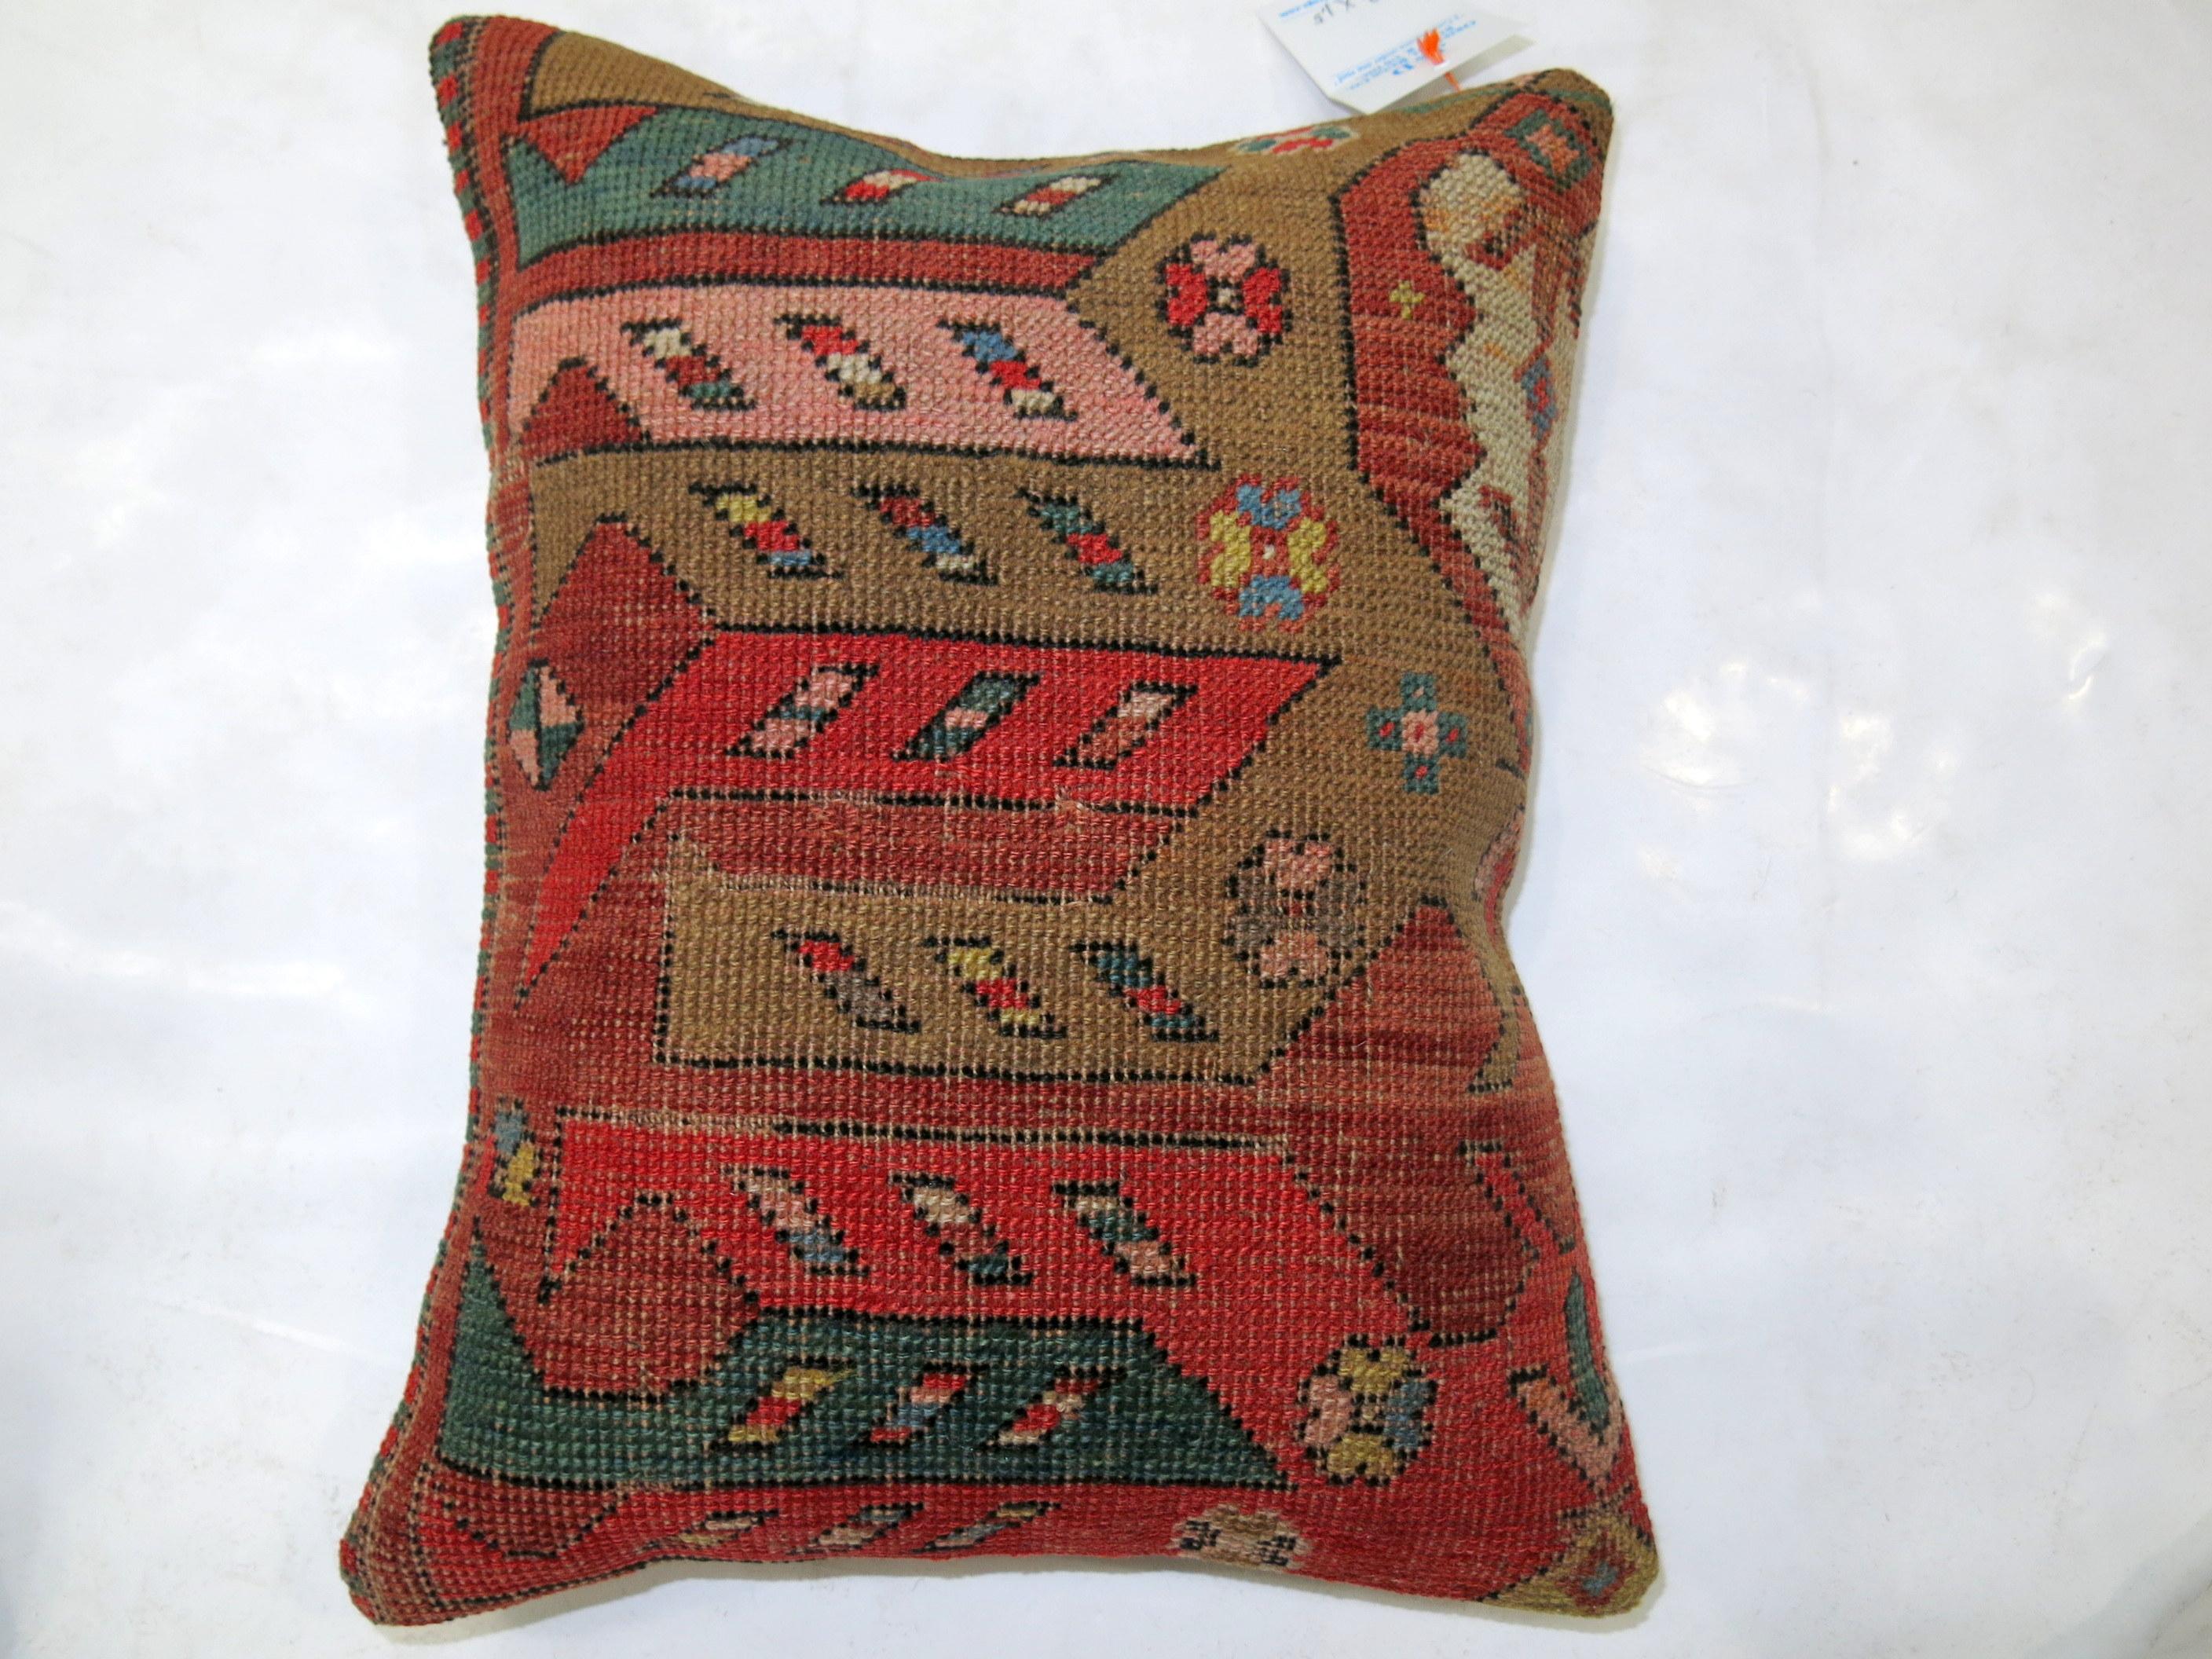 Kissen aus einem kaukasischen Karabagh-Teppich.

14'' x 17''